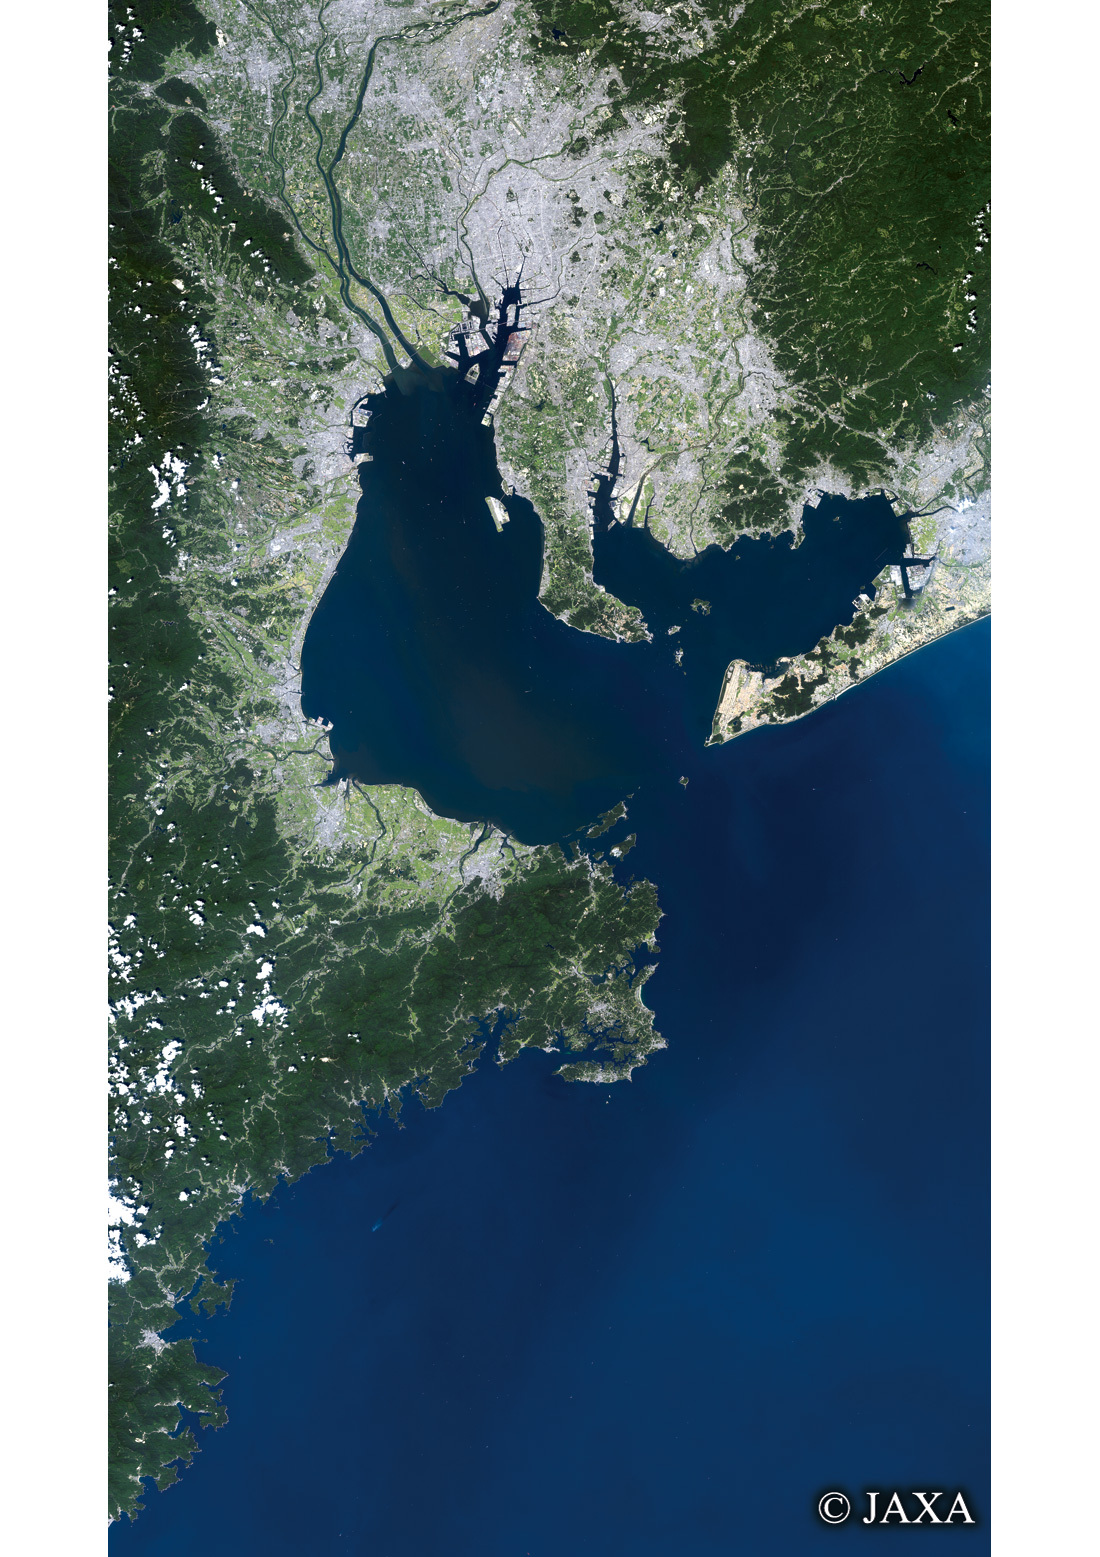 だいちから見た日本の都市 伊勢湾・志摩半島周辺:衛星画像